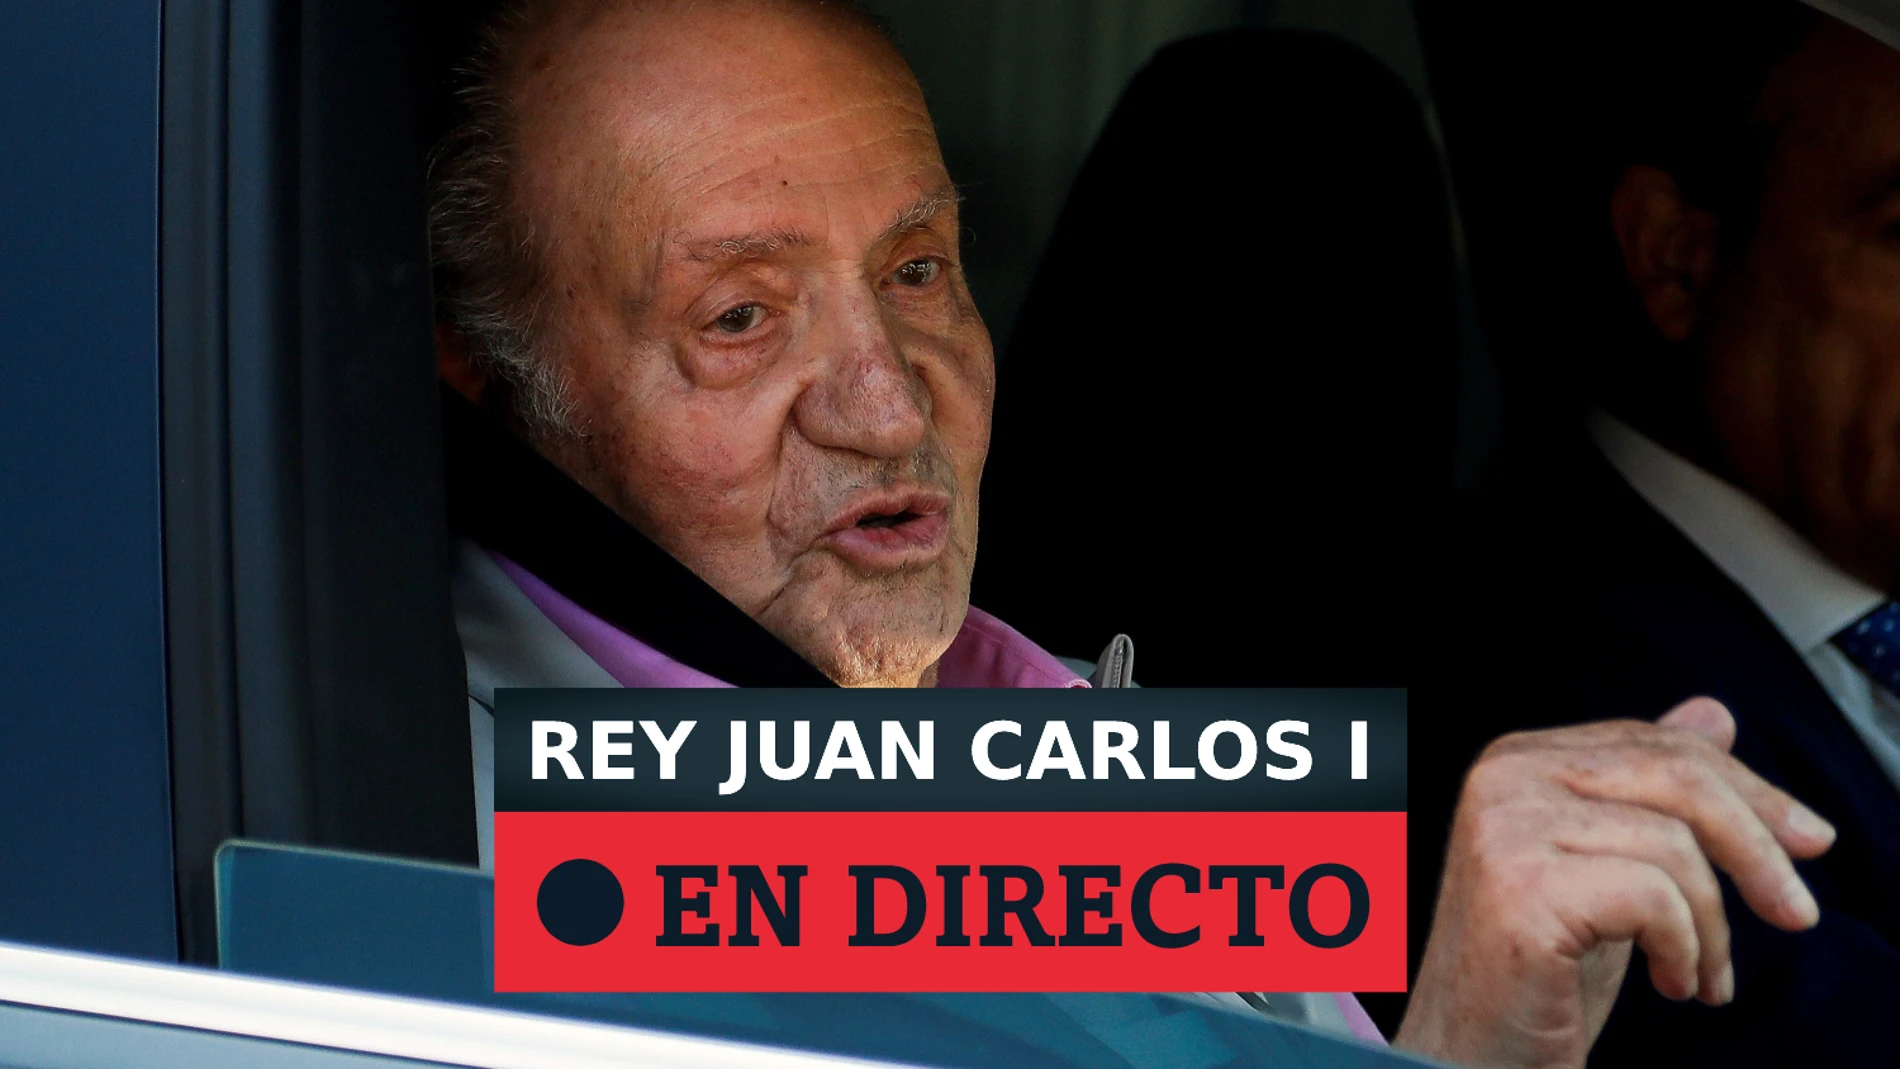 El rey Juan Carlos paga 4 millones a Hacienda para regularizar su situación fiscal en España, en directo